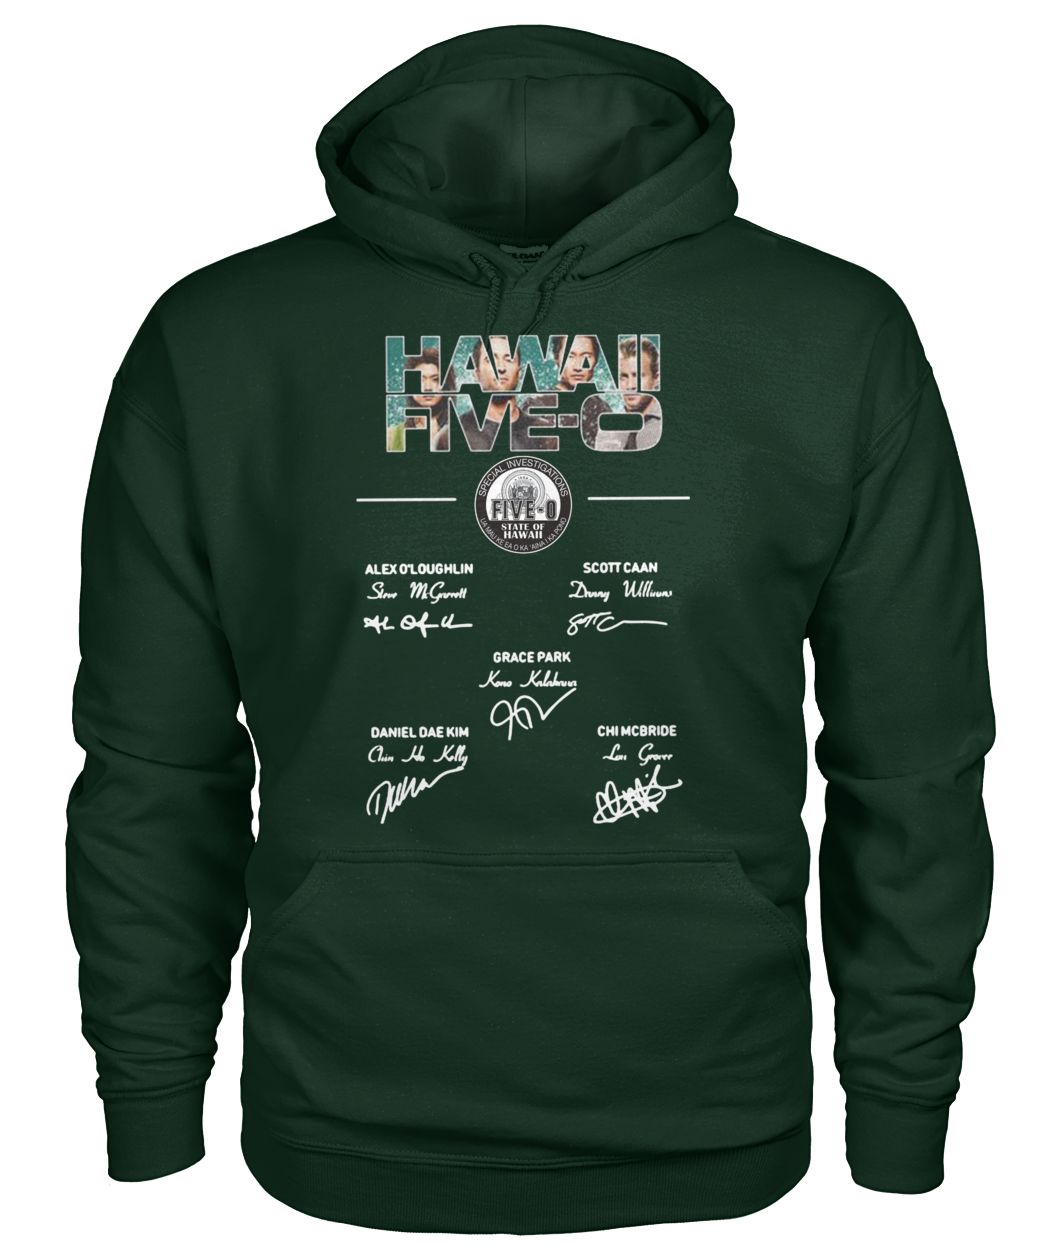 Hawaii five-0 members signature gildan hoodie